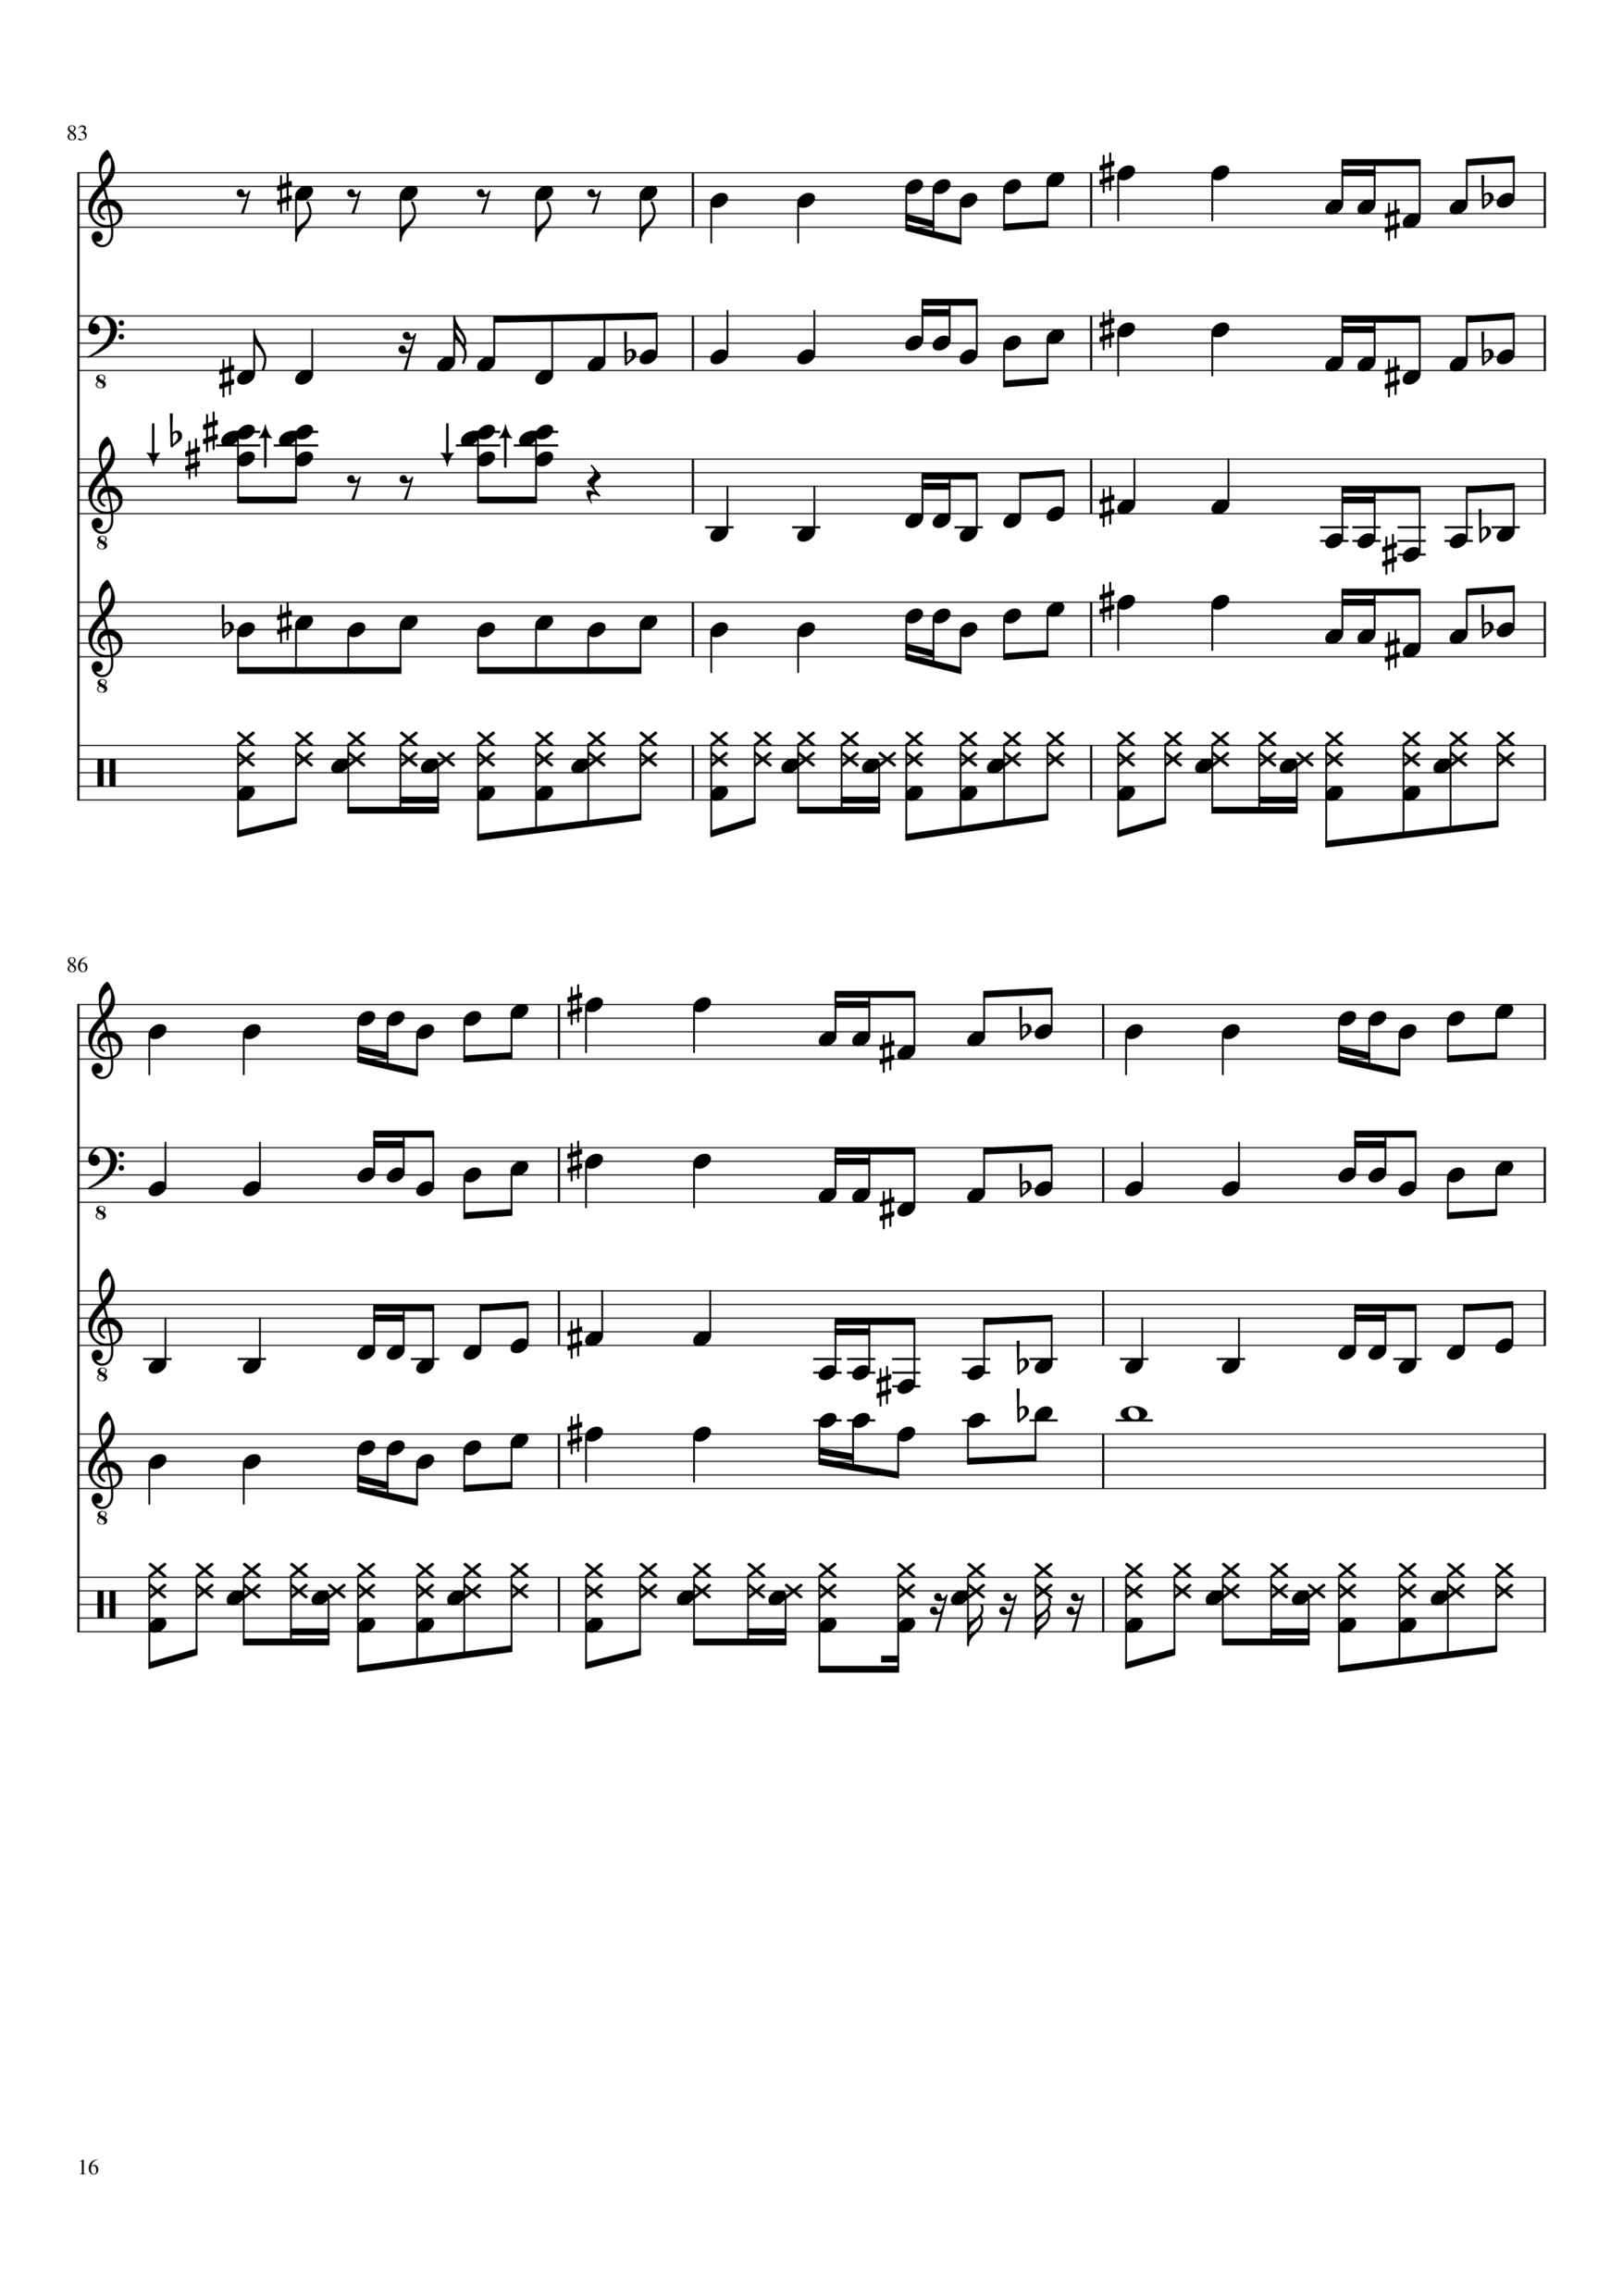 Vechnaya lyubov slide, Image 16